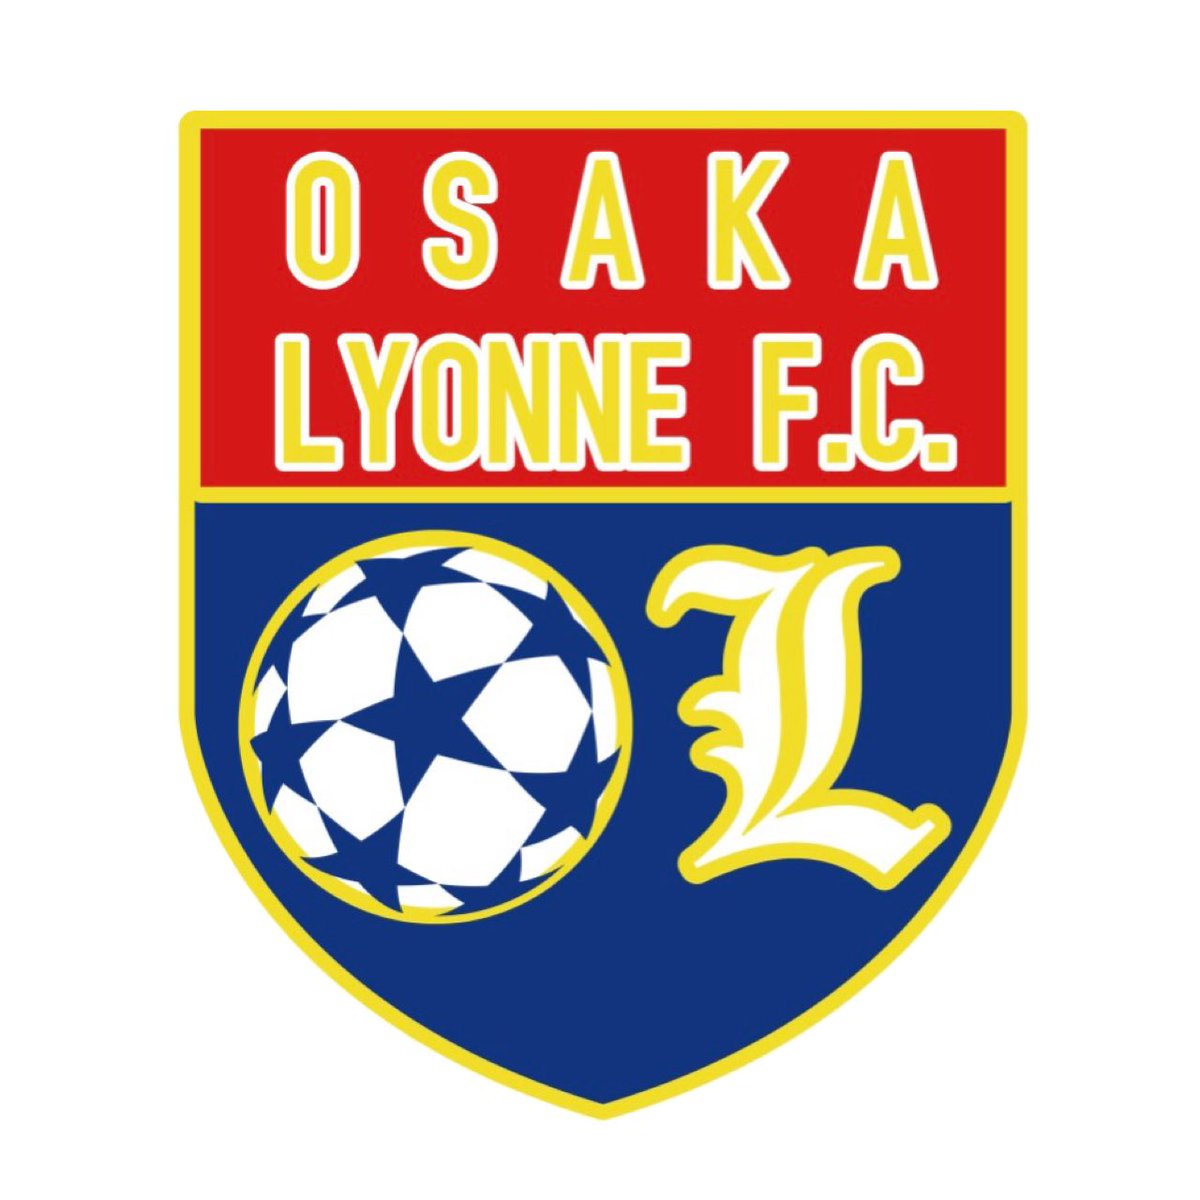 Osaka Lyonne F C Osaka Lyonne Fc Twitter